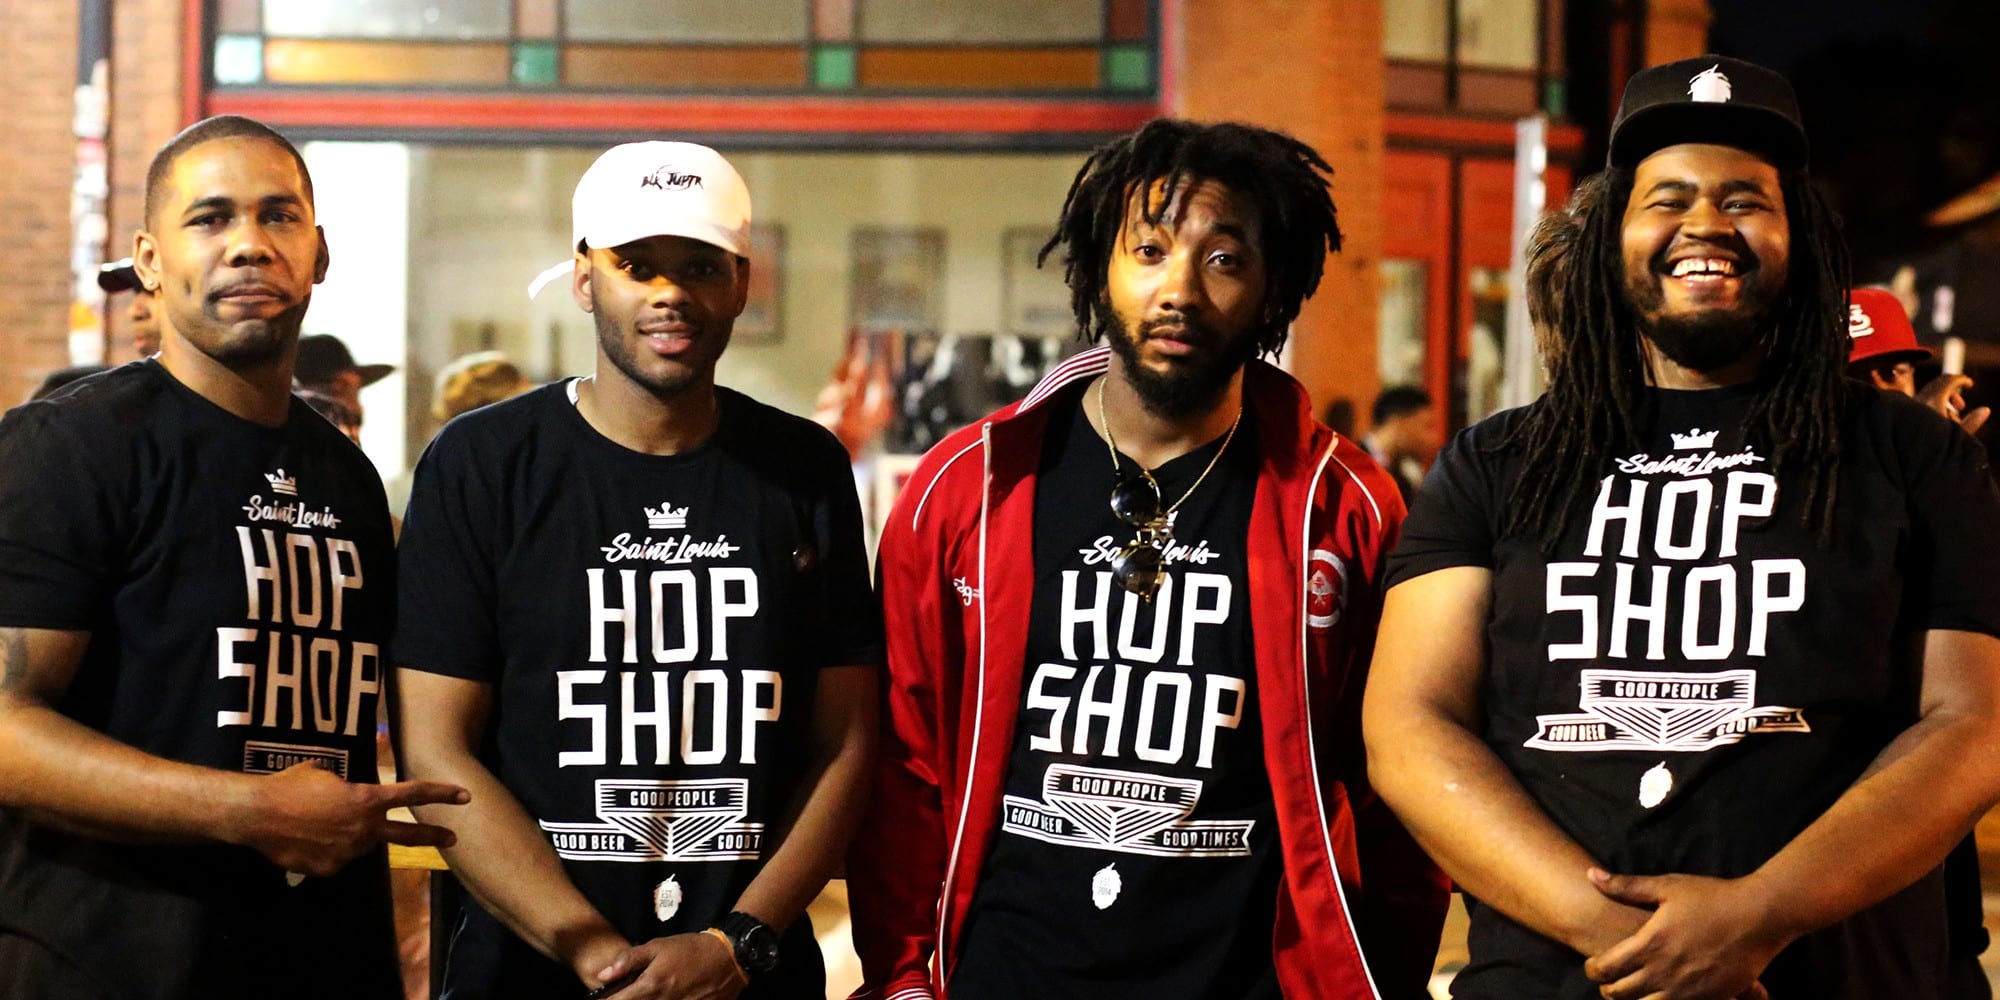 The Saint Louis Hop Shop Crew. Photo by Paul Sableman.